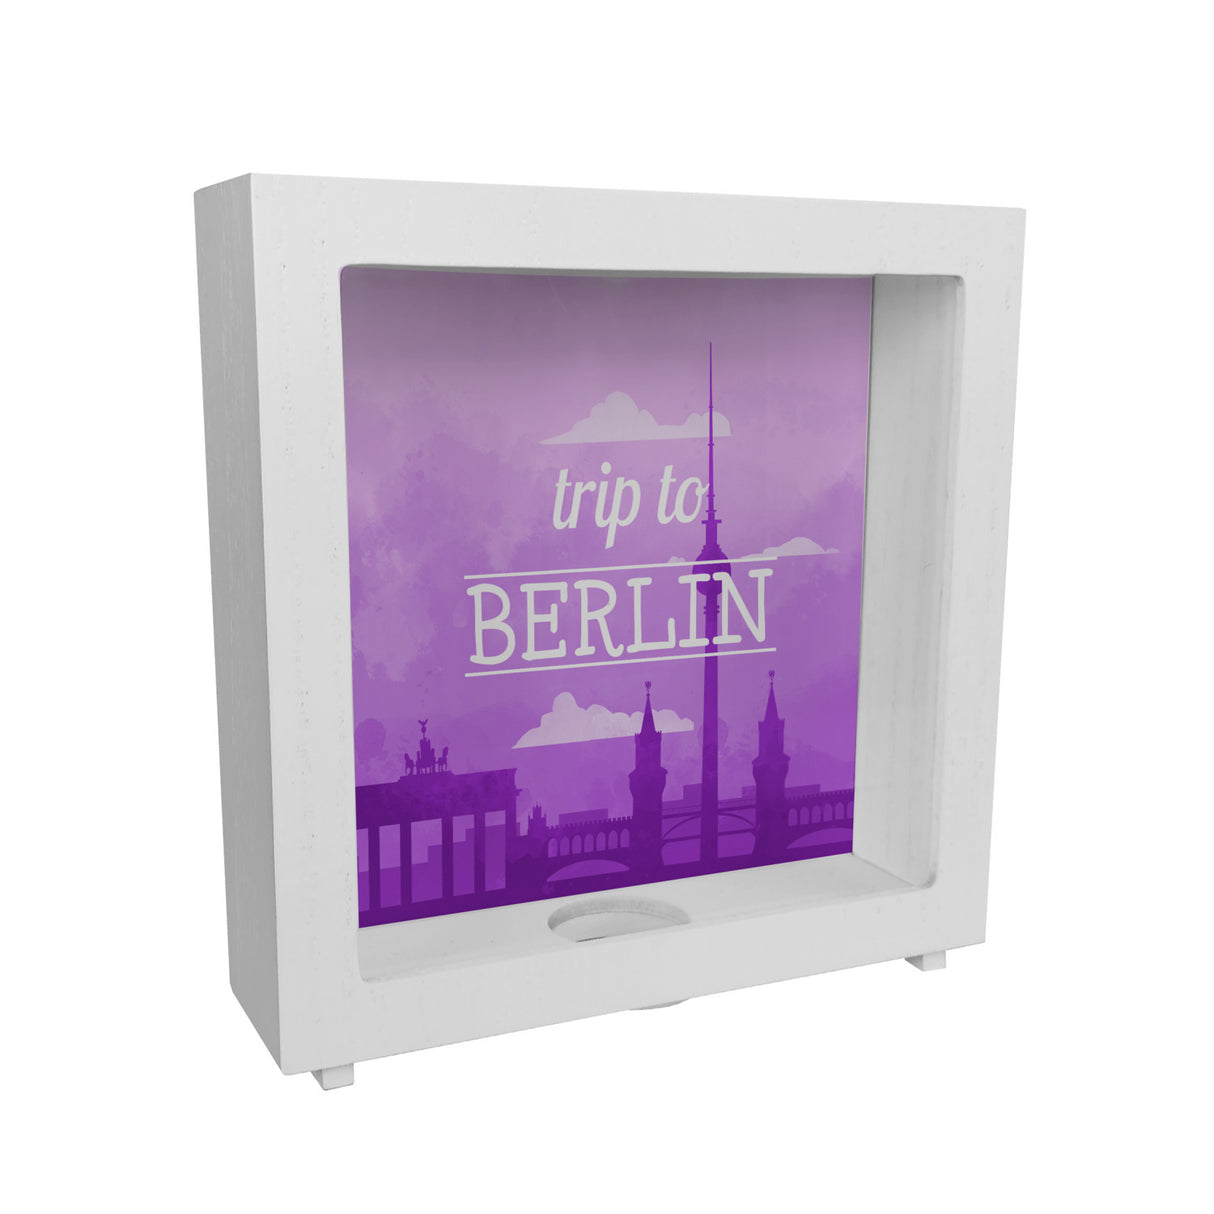 Spardose mit schönem Motiv und Text - Trip to Berlin in lila